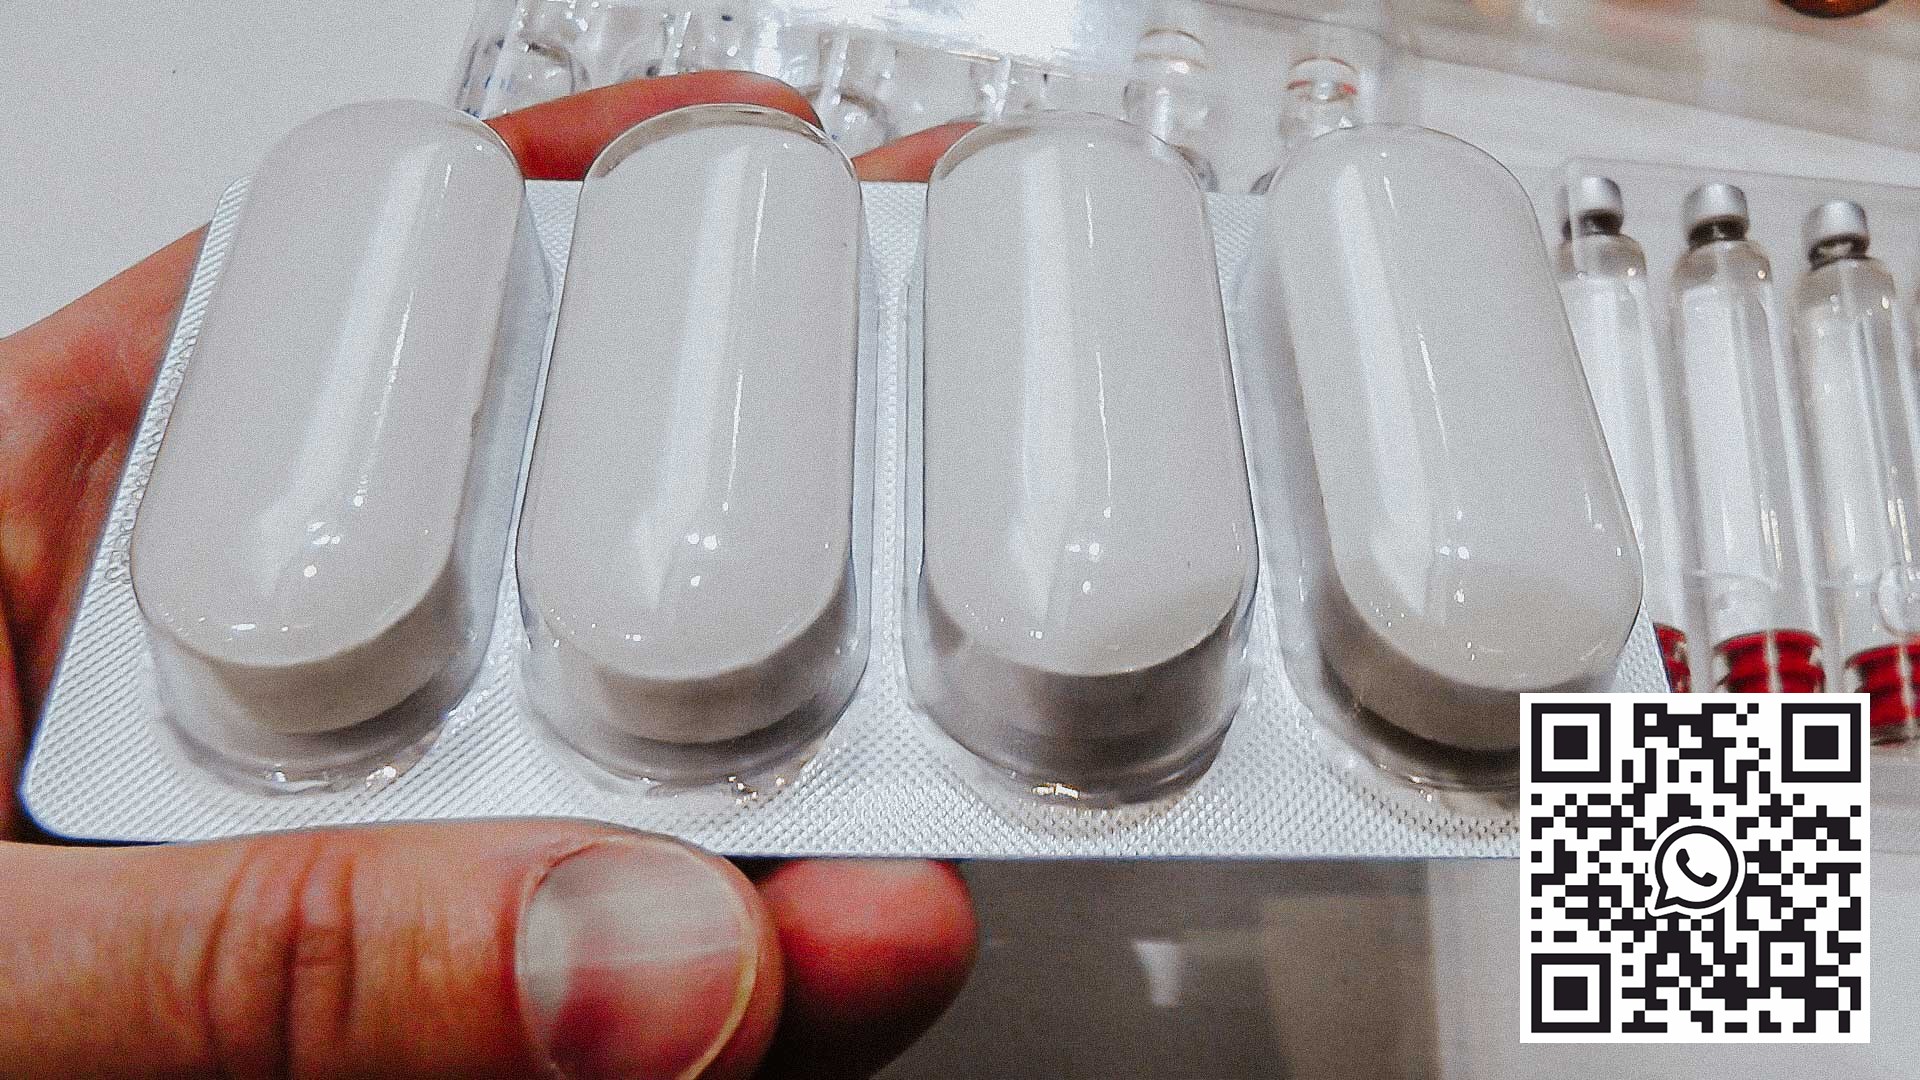 Emballasjeutstyr for store ovale tabletter laget av PVC og aluminium